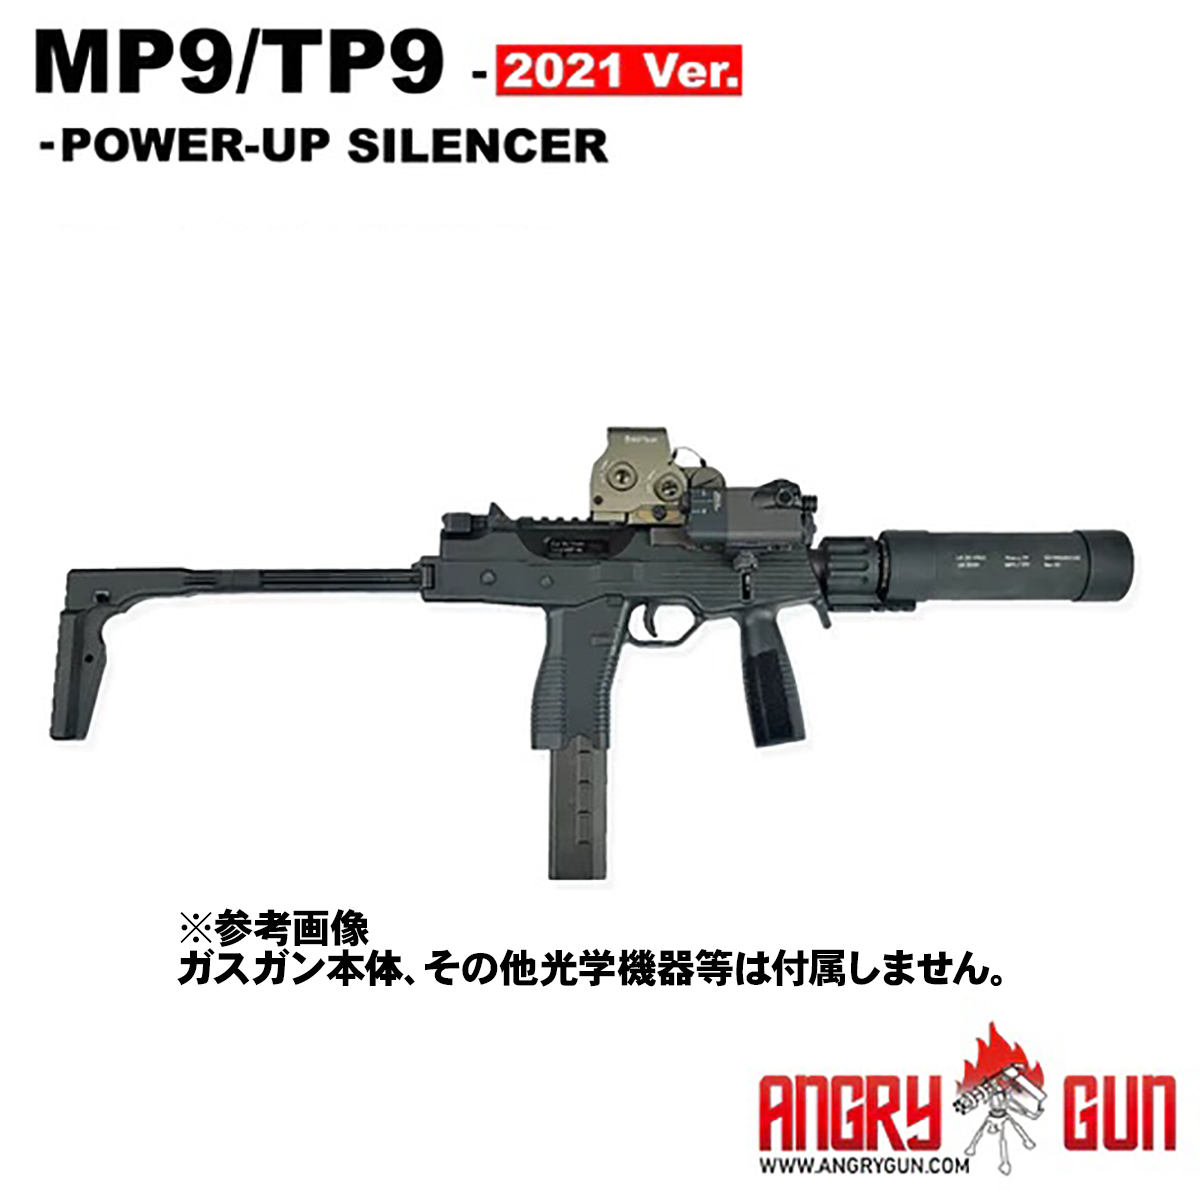 ANGRY GUN KWA/KSC MP9/TP9用サイレンサー 2021ver.